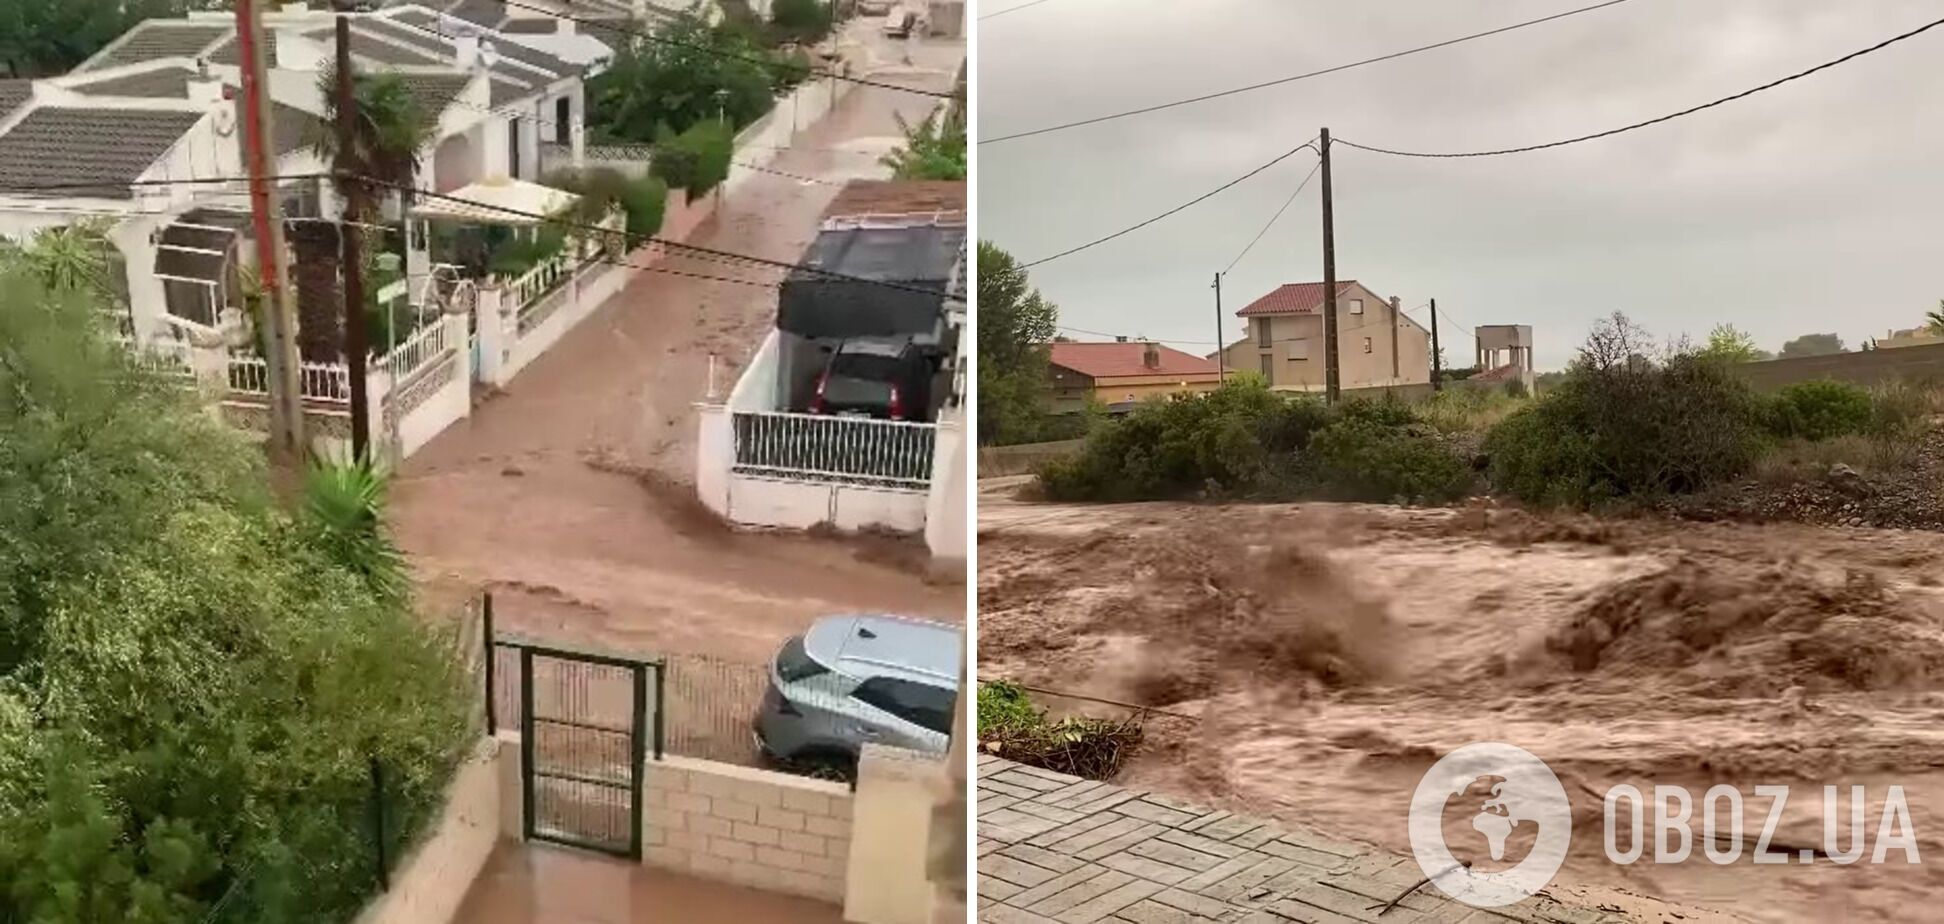 Испанию накрыл мощный ураган "Дана": улицы превратились в бурные реки, затопило метро, есть погибшие. Фото и видео